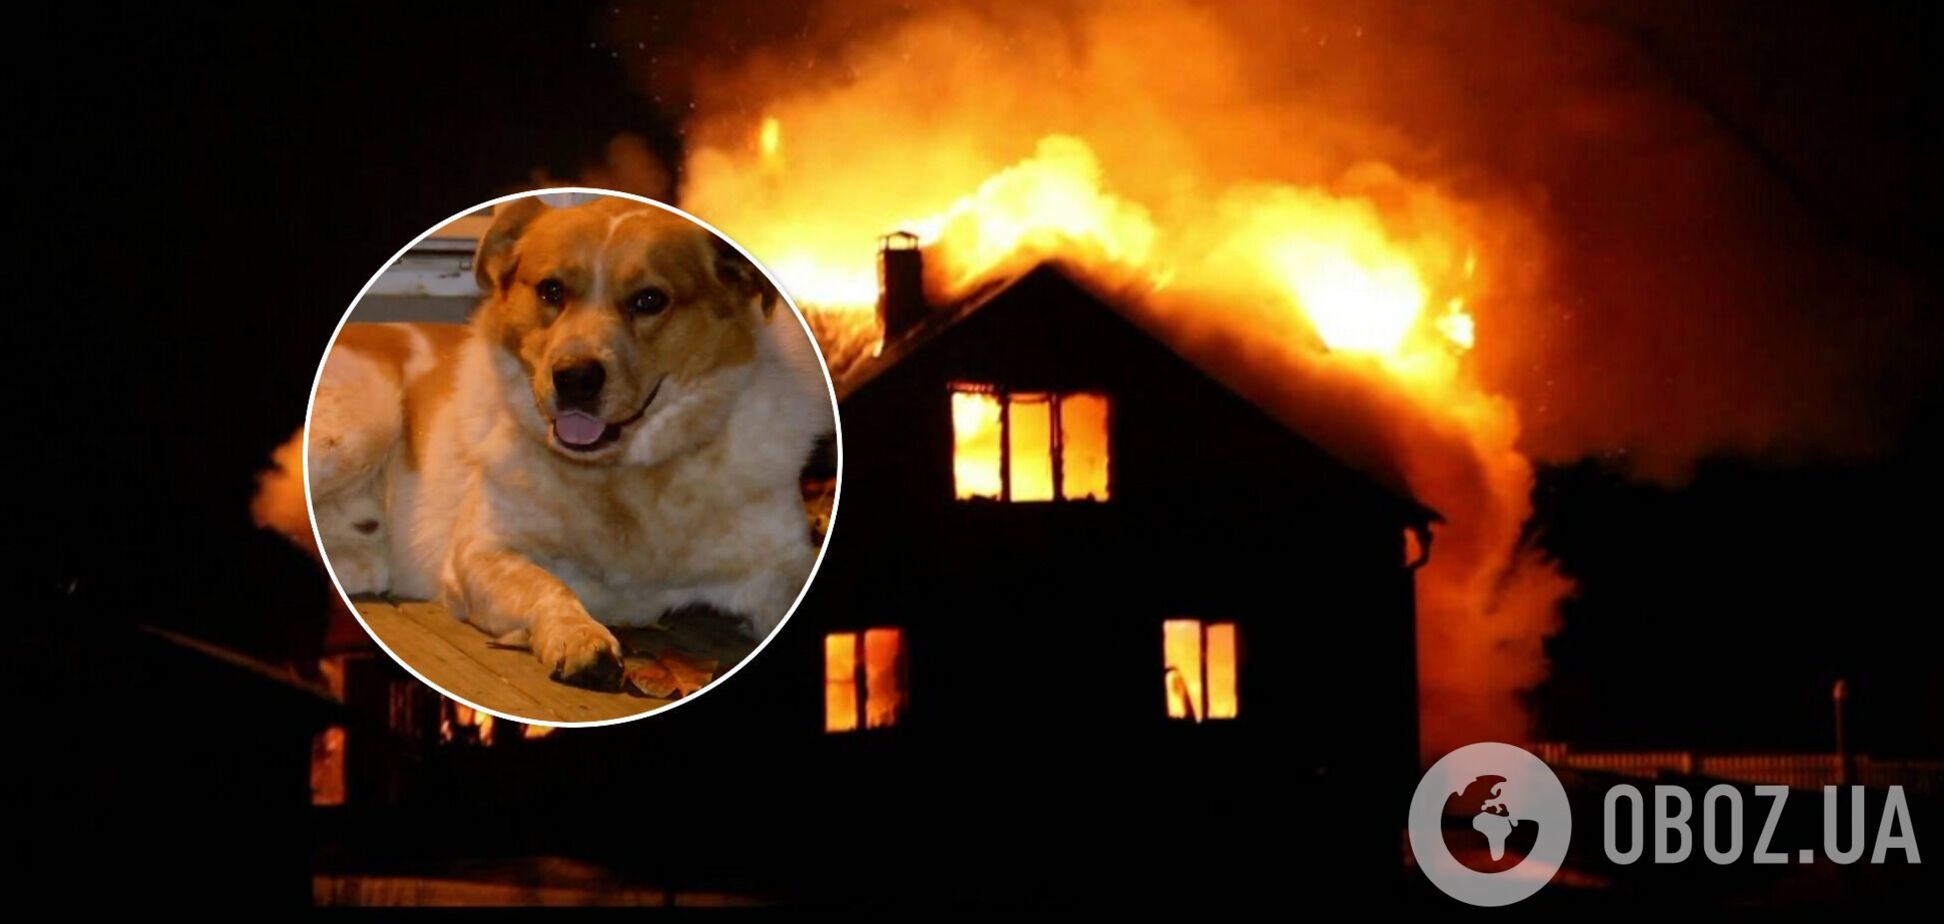 У США пес врятував сім'ю з дітьми від пожежі: про 'героя' розповіли у соцмережах. Фото